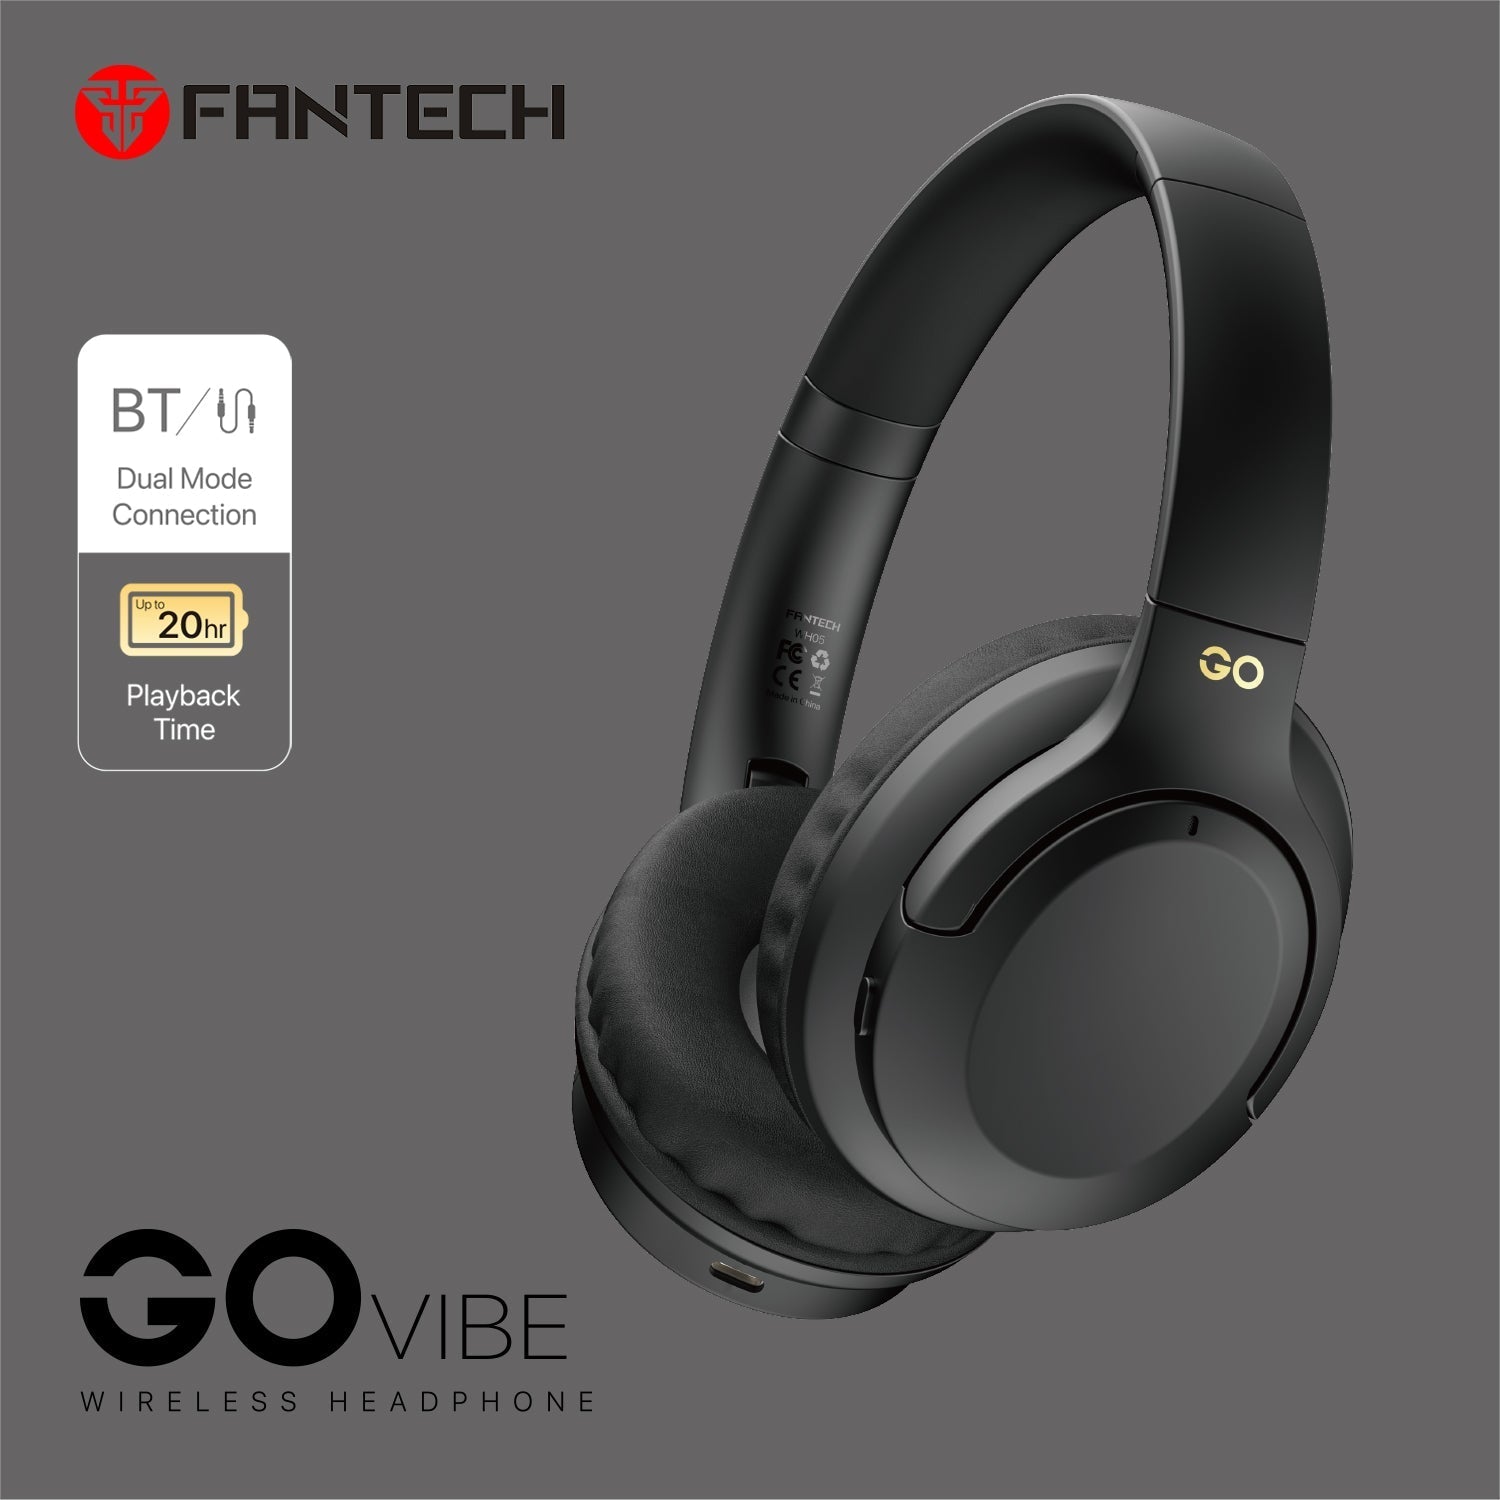 Fantech Go Vibe WH05 Wireless Headphone JOD 20